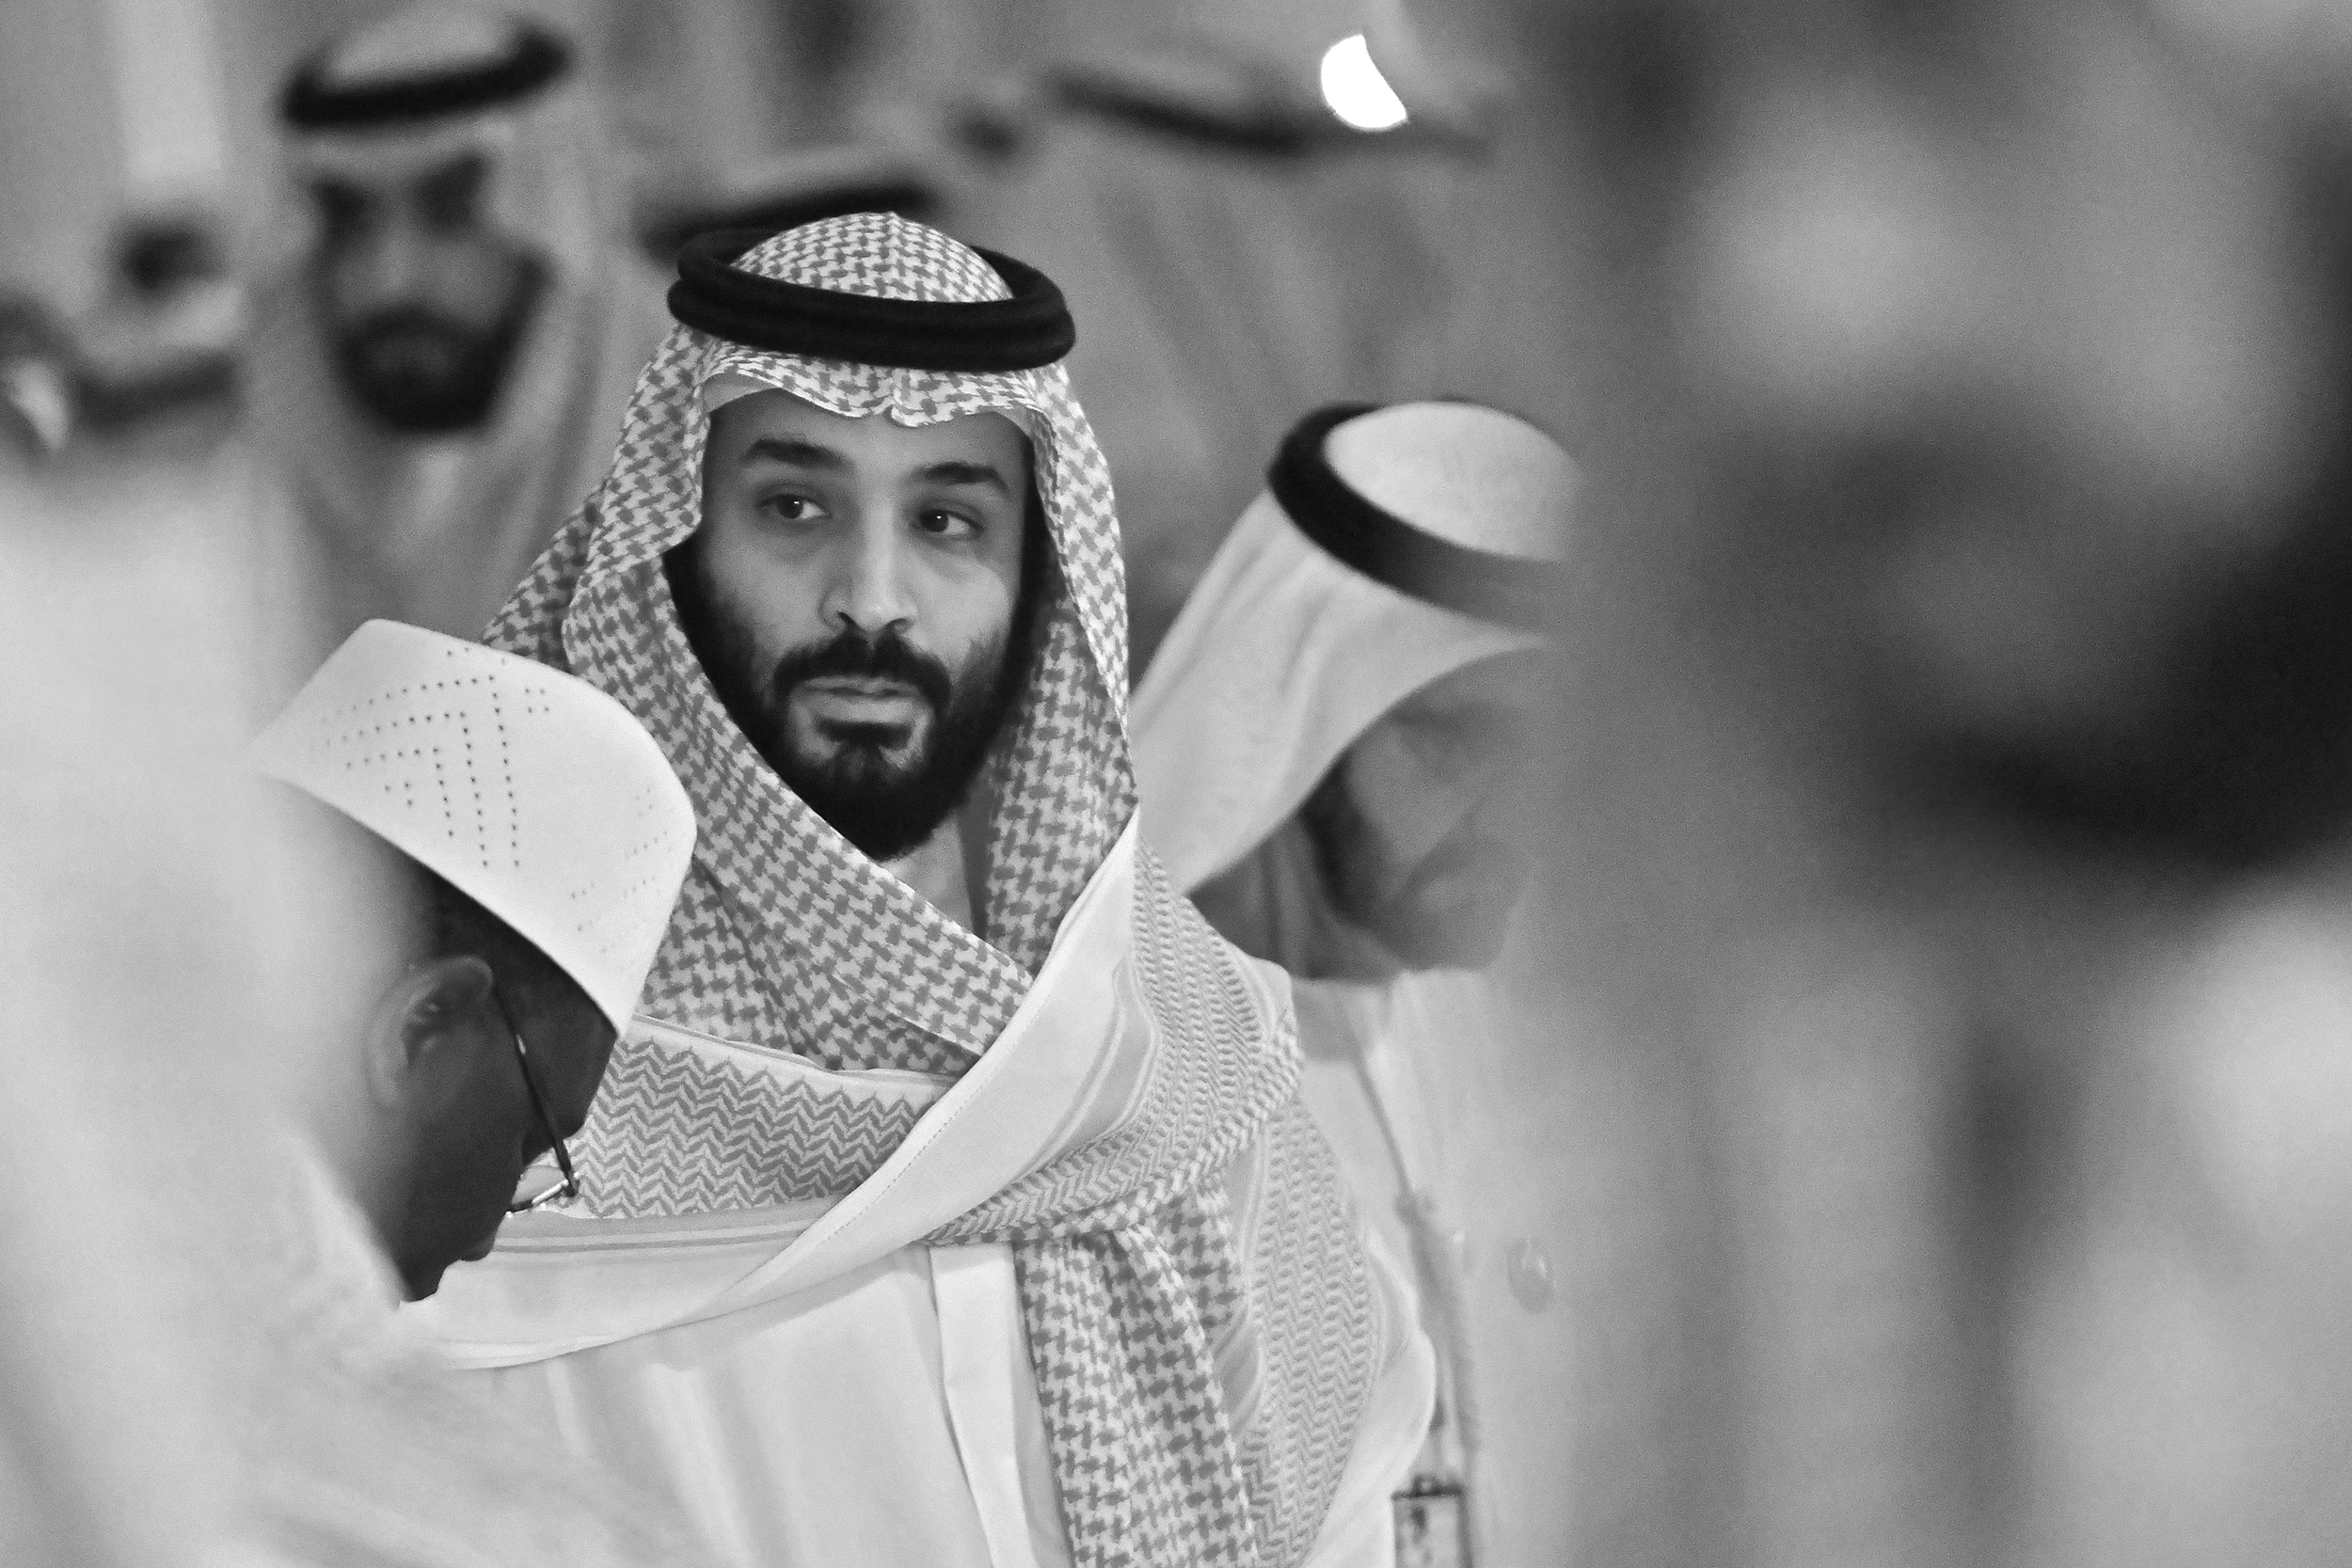 إنترسبت تصف محمد بن سلمان بأنه مجنون قاتل يقيم في الرياض watanserb.com